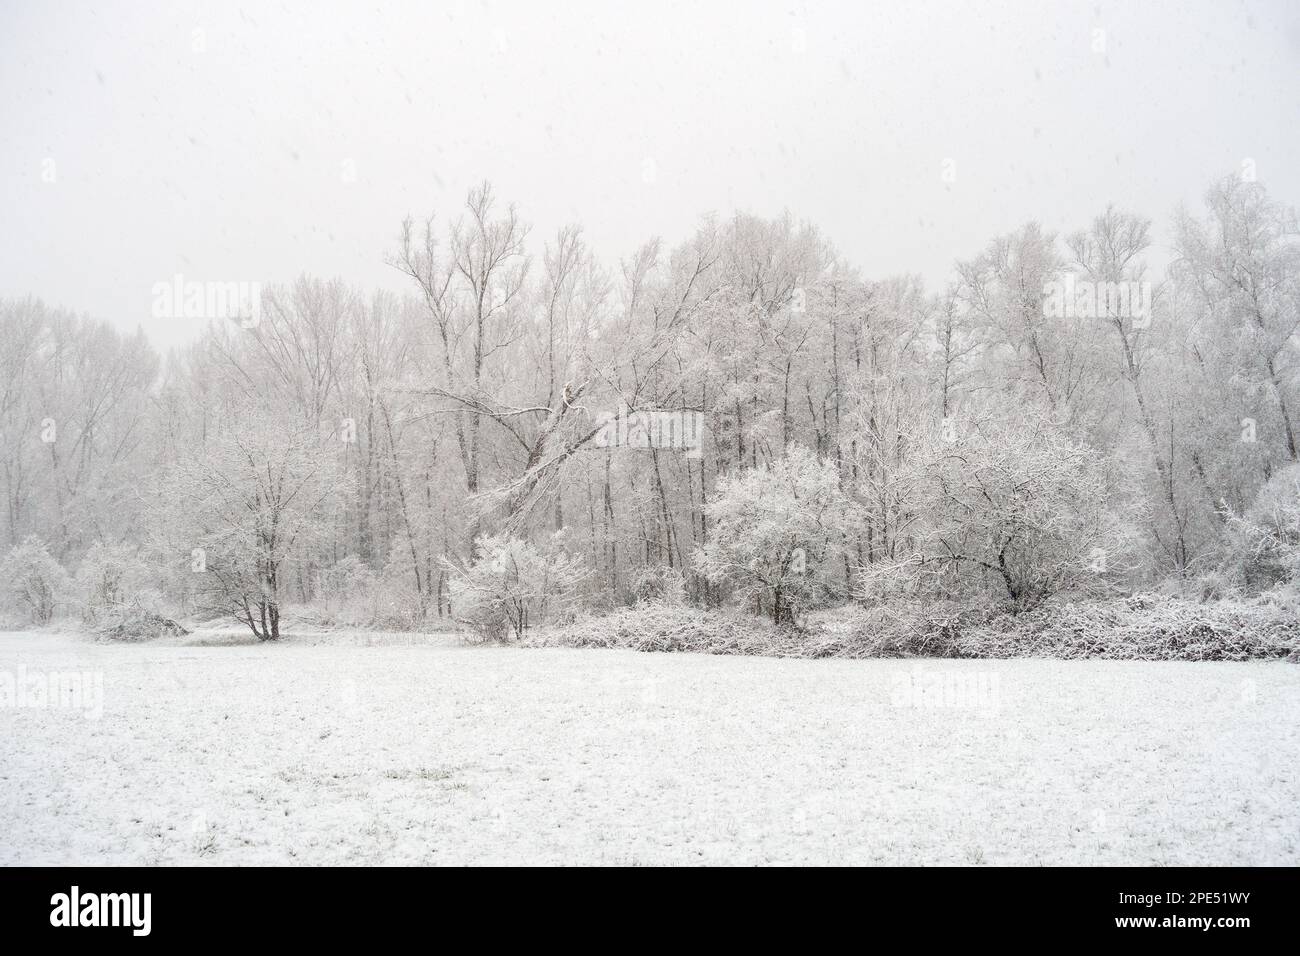 Inizio dell'inverno a Meerbusch, Renania settentrionale-Vestfalia, Germania. Forte nevicata in una riserva naturale, Ilvericher Altrheinschlinge vicino a Düsseldorf. Foto Stock